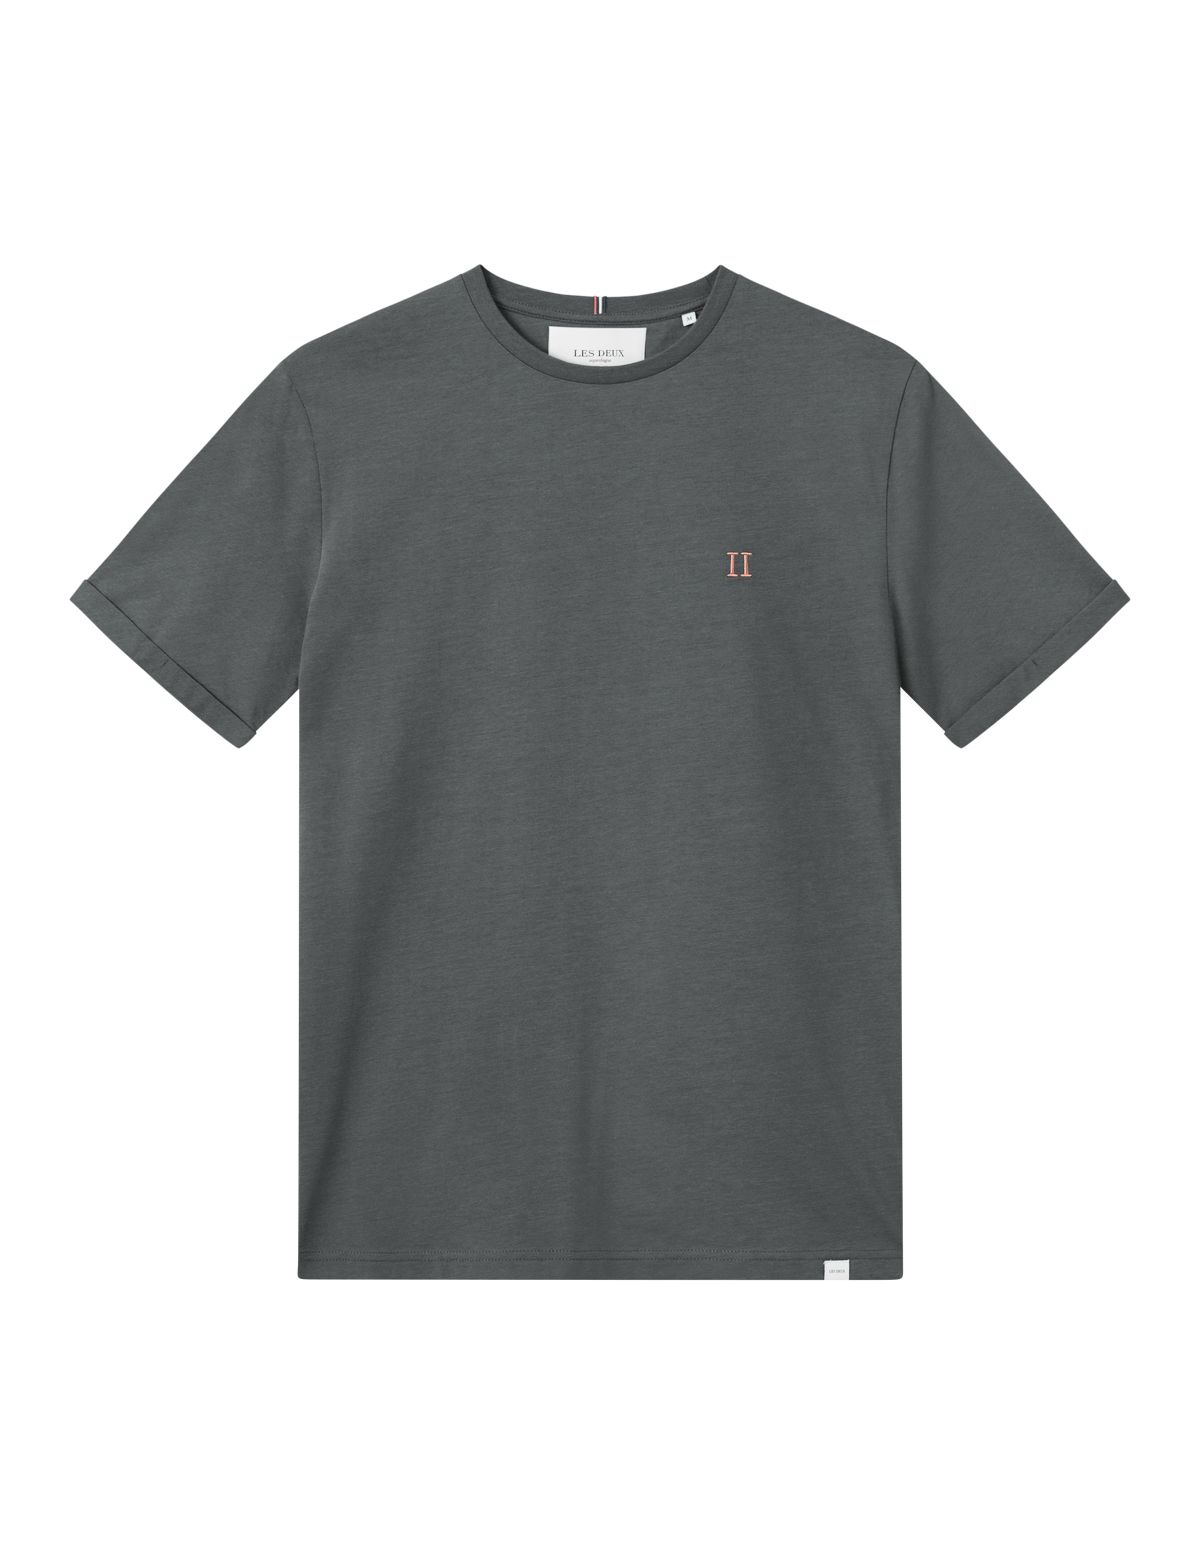  Nørregaard T-shirt, Raven Orange, L